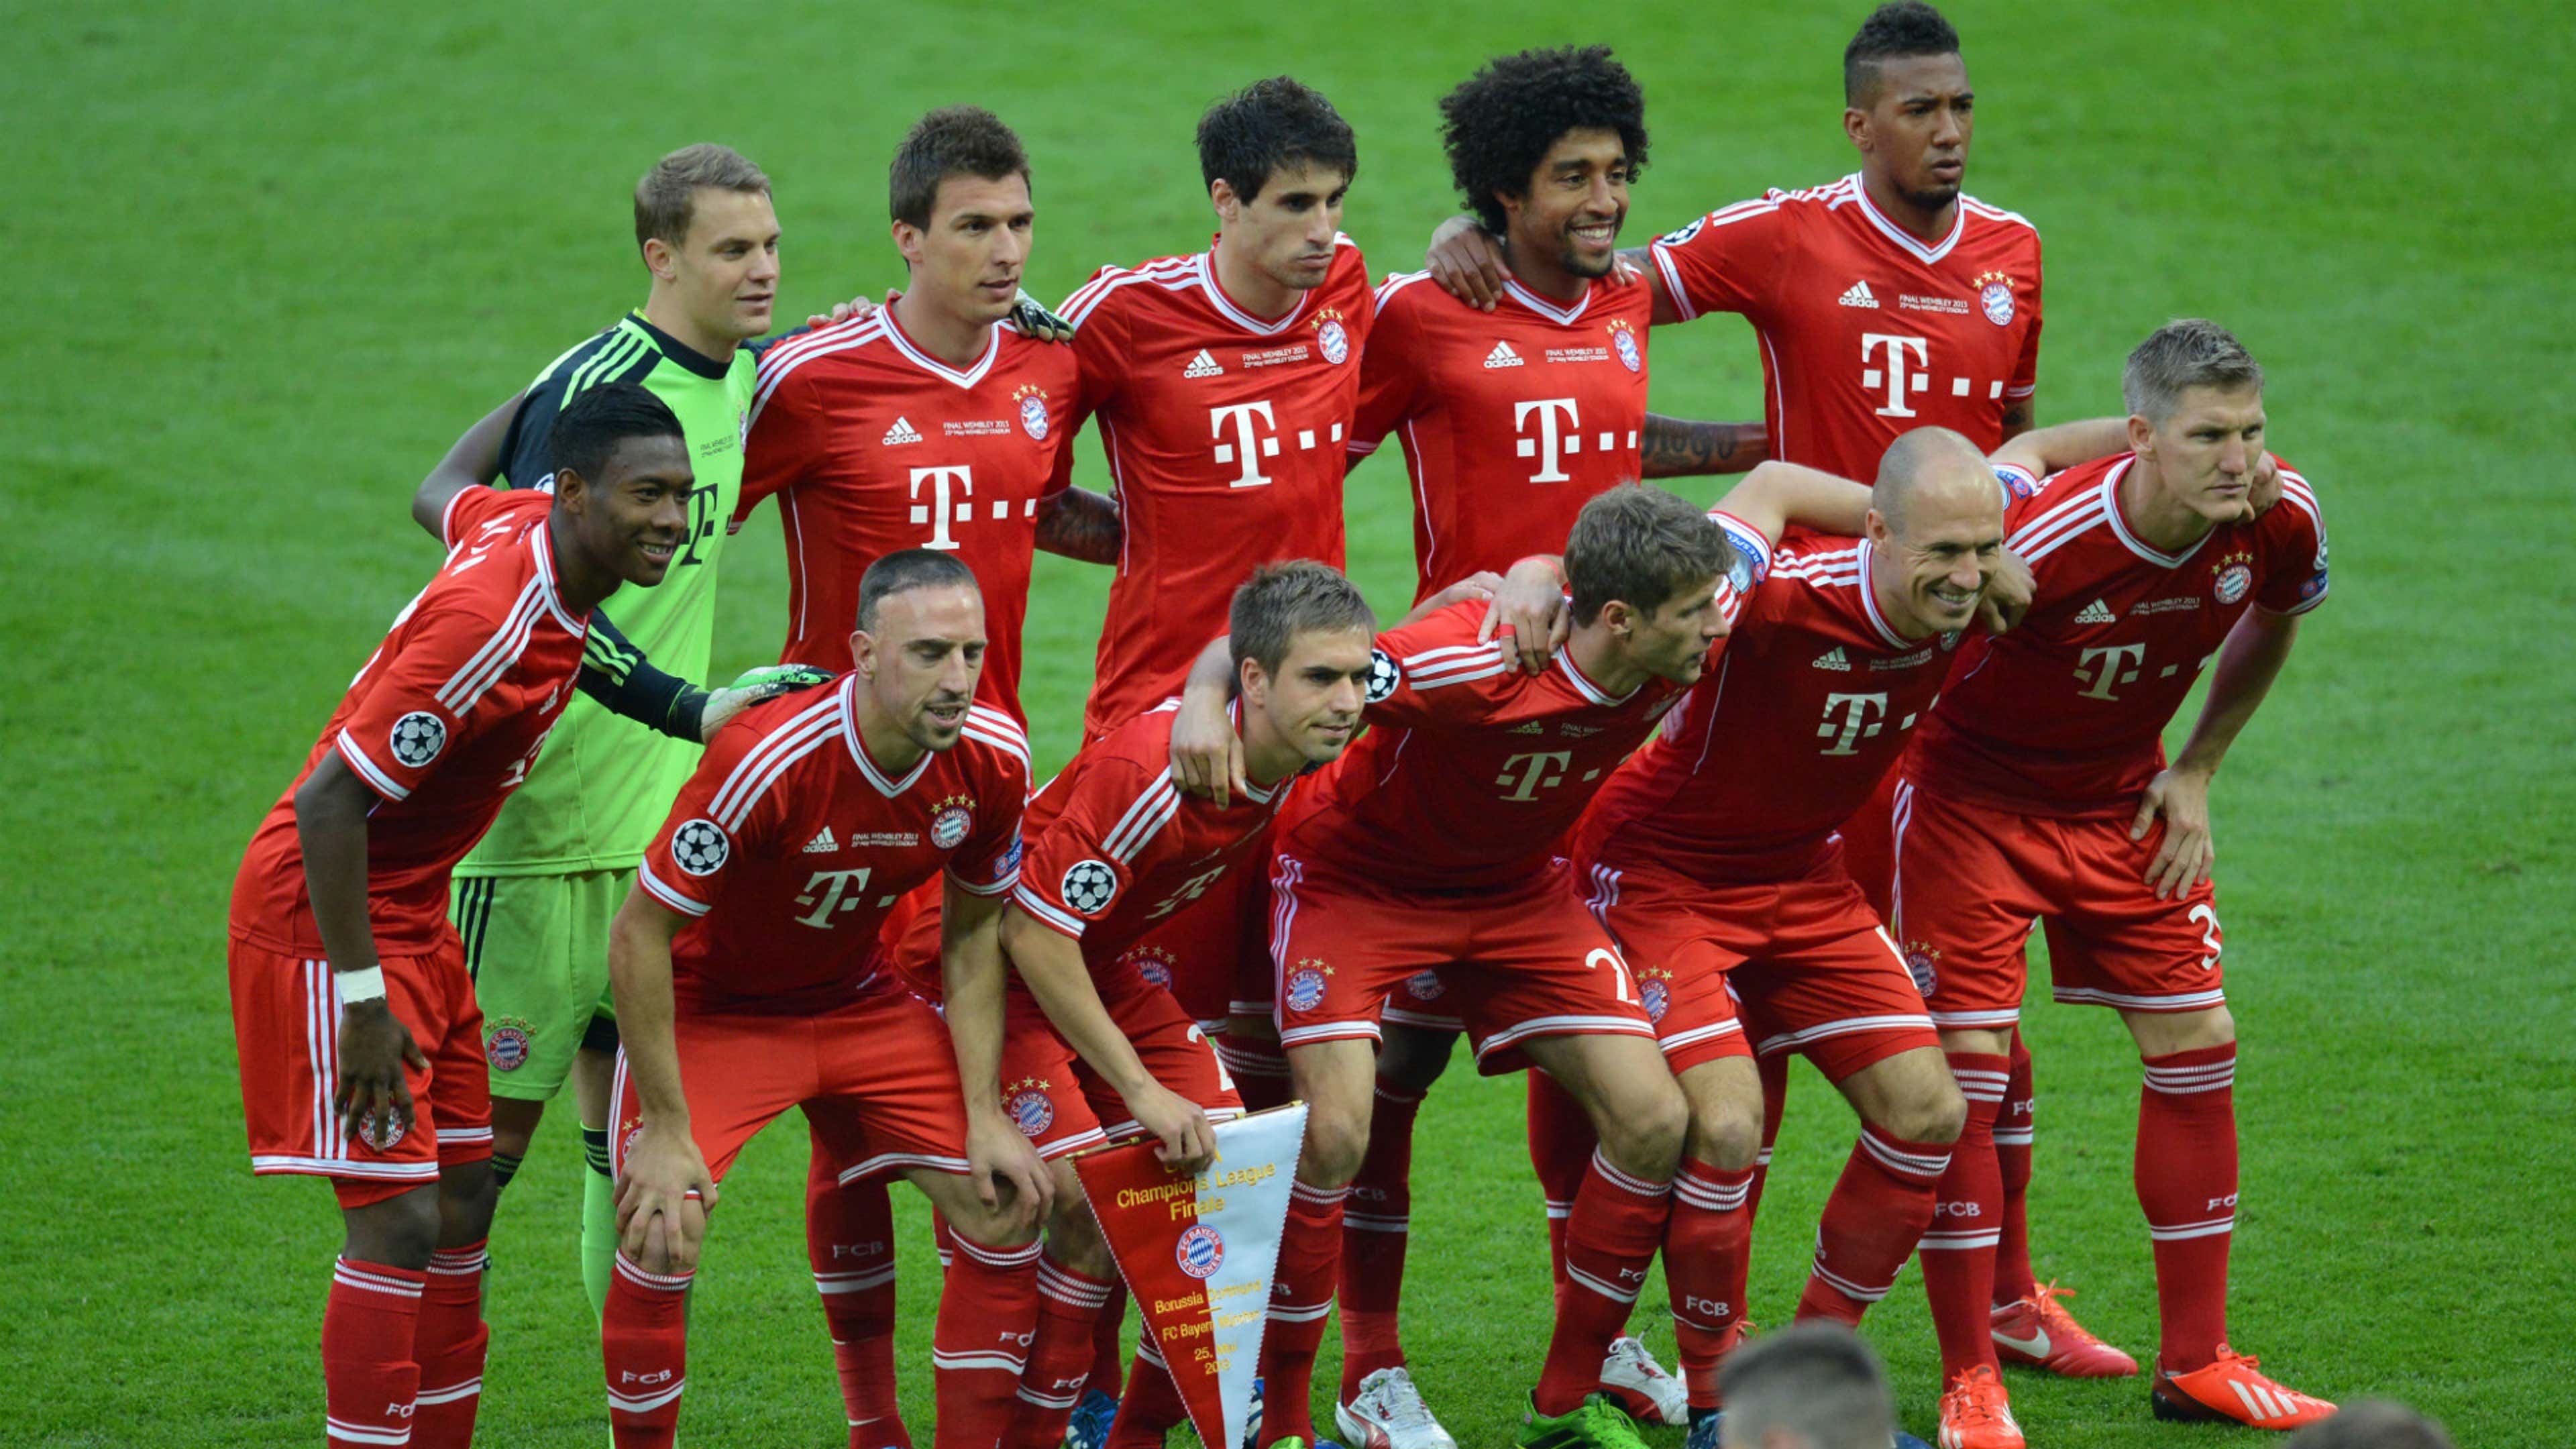 Bayern 2013